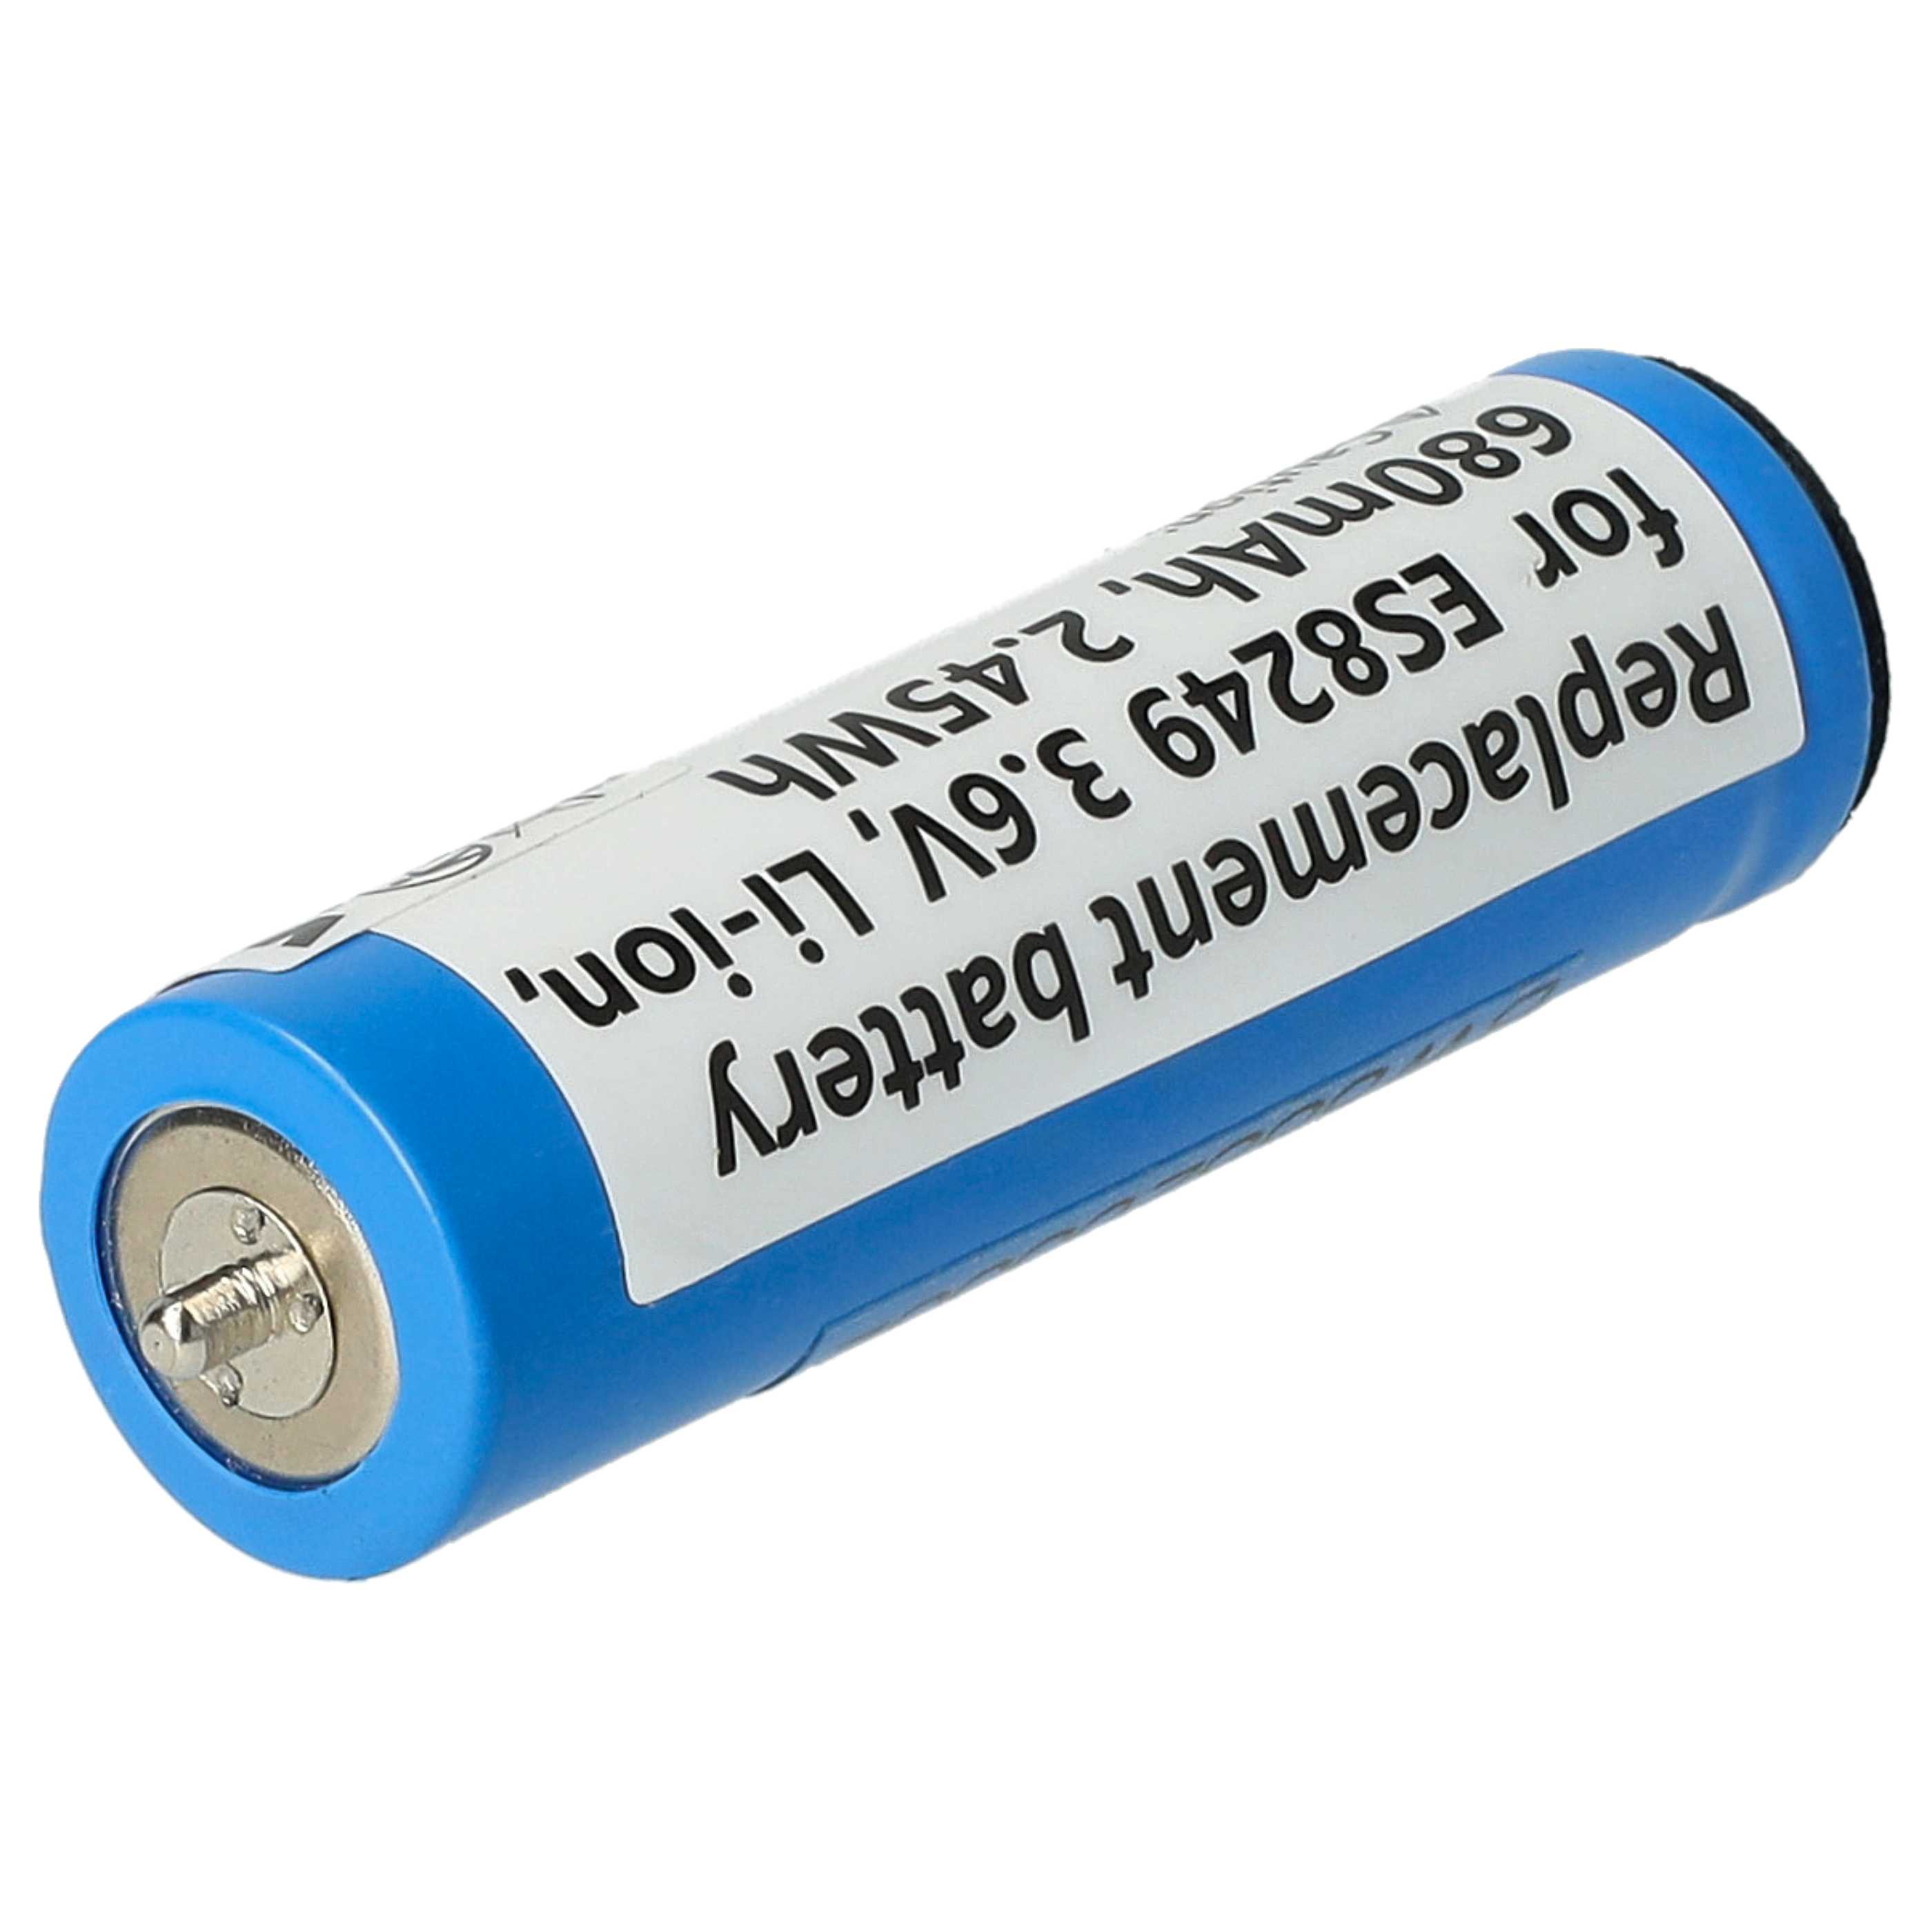 Batterie remplace Panasonic WES8163L2505, V9ZL2508, K0360-0570 pour rasoir électrique - 680mAh 3,6V Li-ion